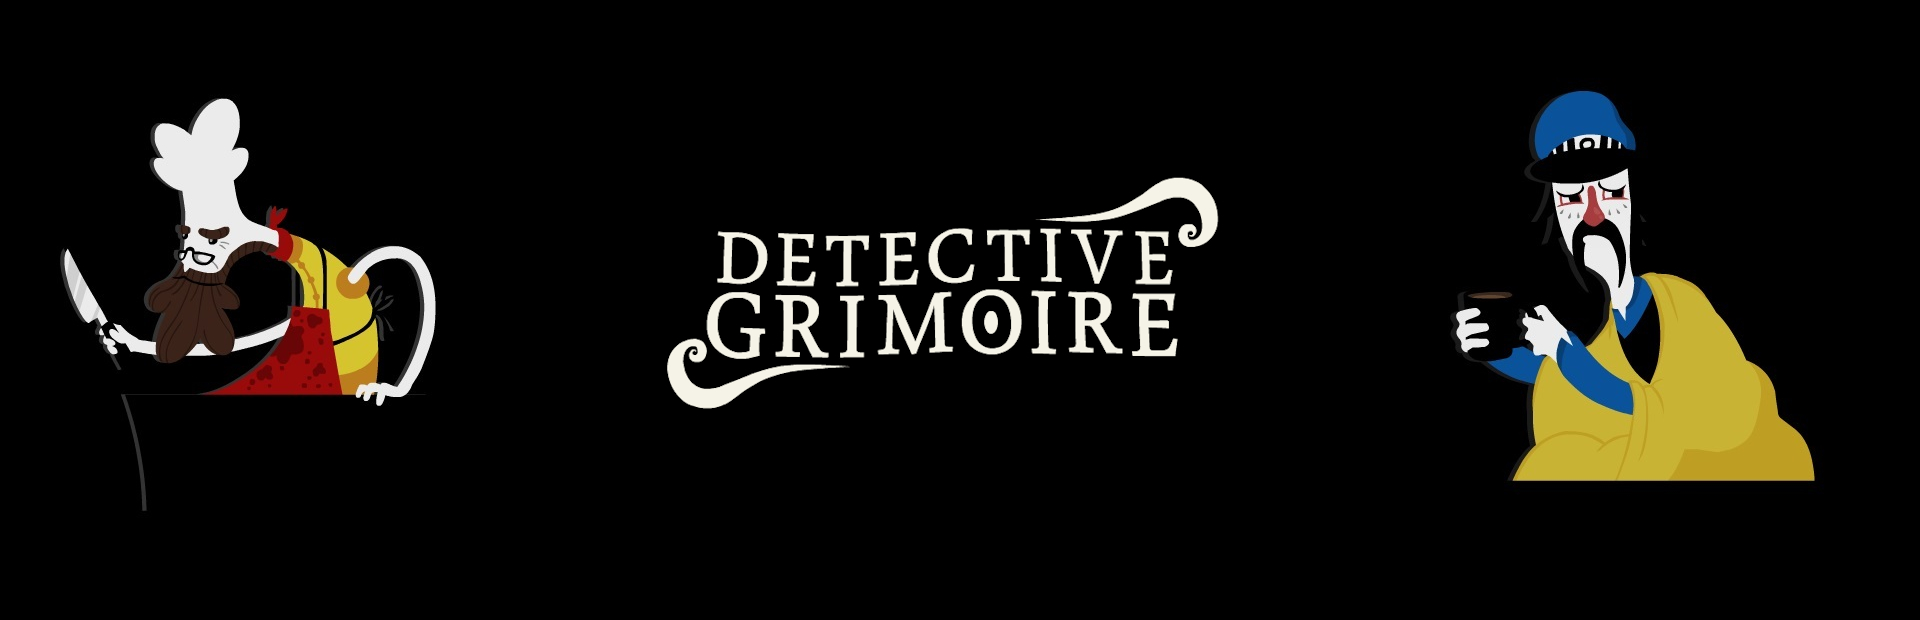 دانلود بازی Detective Grimoire برای کامپیوتر | گیمباتو